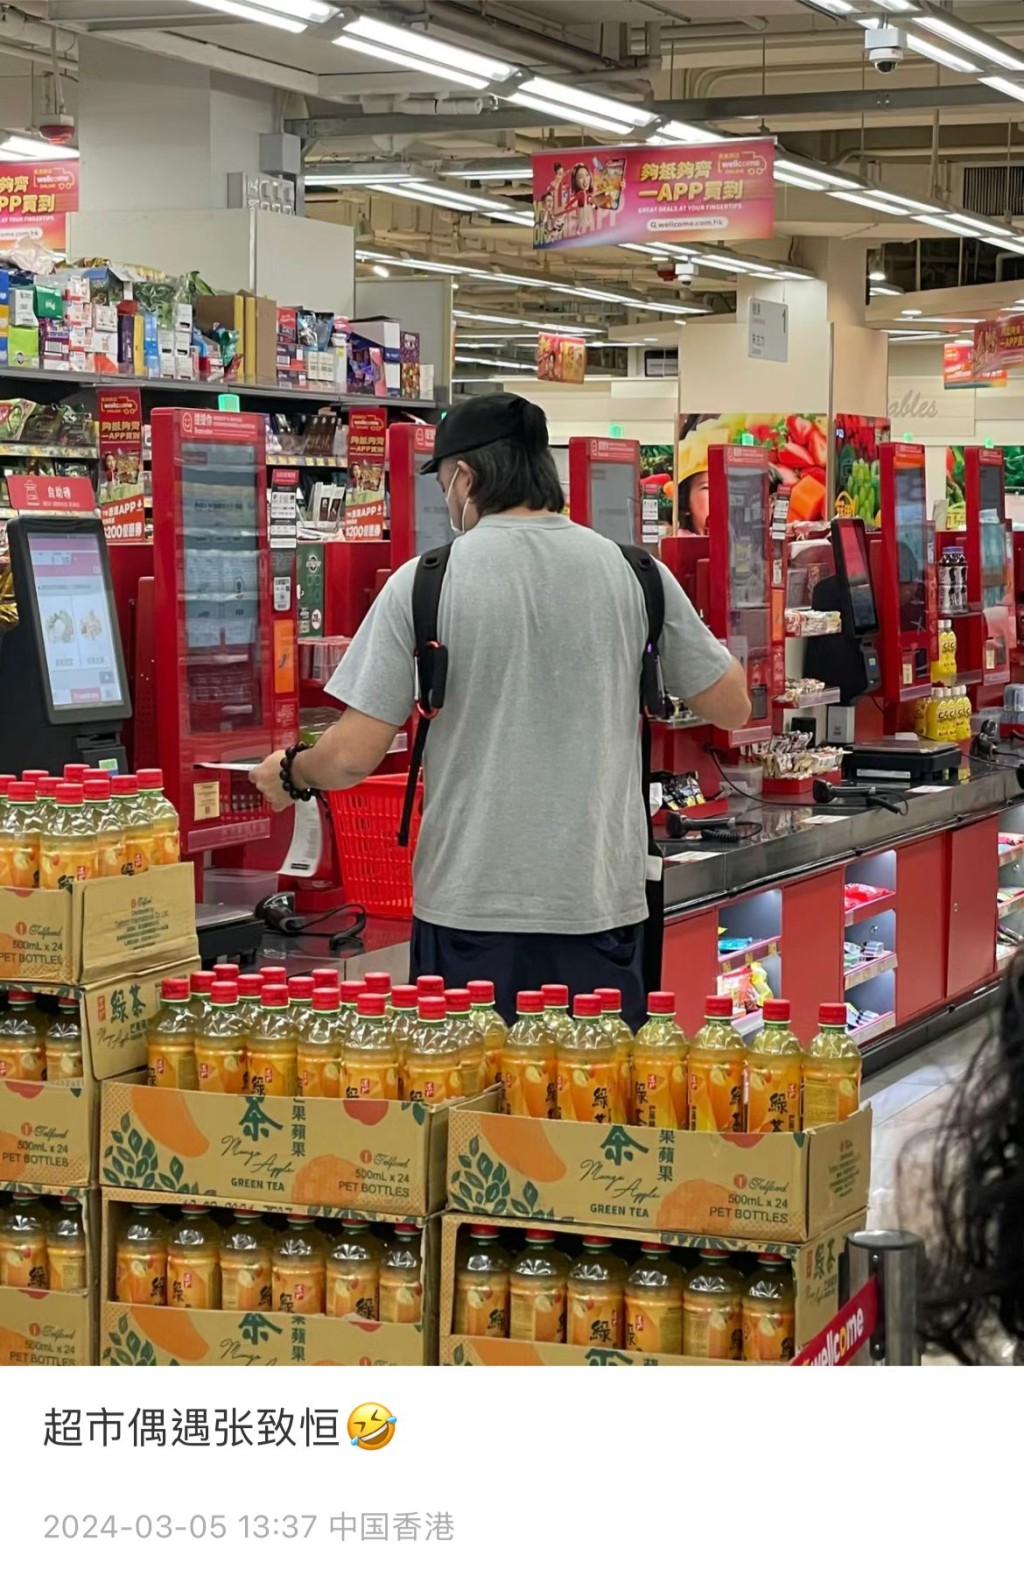 日前有网民于社交网声称在港一间超市偶遇张致恒，并附上一张对方的背影图。